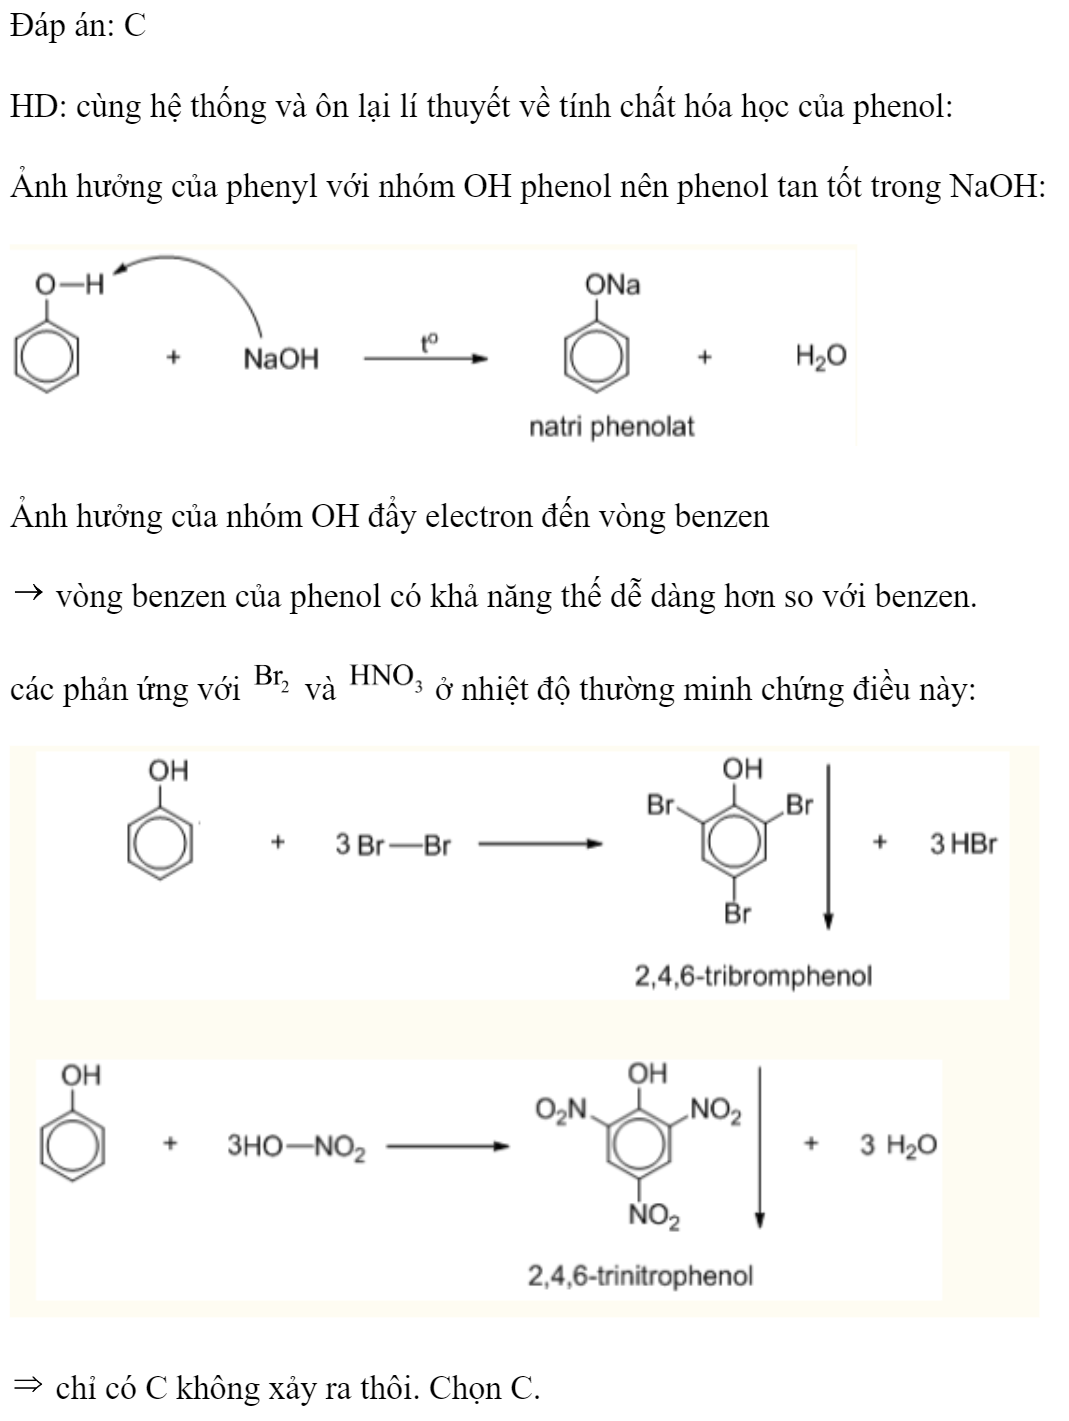 Ở điều kiện thường, phenol không tác dụng với dung dịch chất nào sau đây? 	A. Br2.	B. NaOH.	C. HBr.	D. HNO3. Đáp án: C HD: cùng hệ thống và ôn lại lí thuyết về tính chất hóa học của phenol: Ảnh hưởng của phenyl với nhóm OH phenol nên phenol tan tốt trong NaOH:  Ảnh hưởng của nhóm OH đẩy electron đến vòng benzen  vòng benzen của phenol có khả năng thế dễ dàng hơn so với benzen.  các phản ứng với  và  ở nhiệt độ thường minh chứng điều này:   chỉ có C không xảy ra thôi. Chọn C. (ảnh 1)